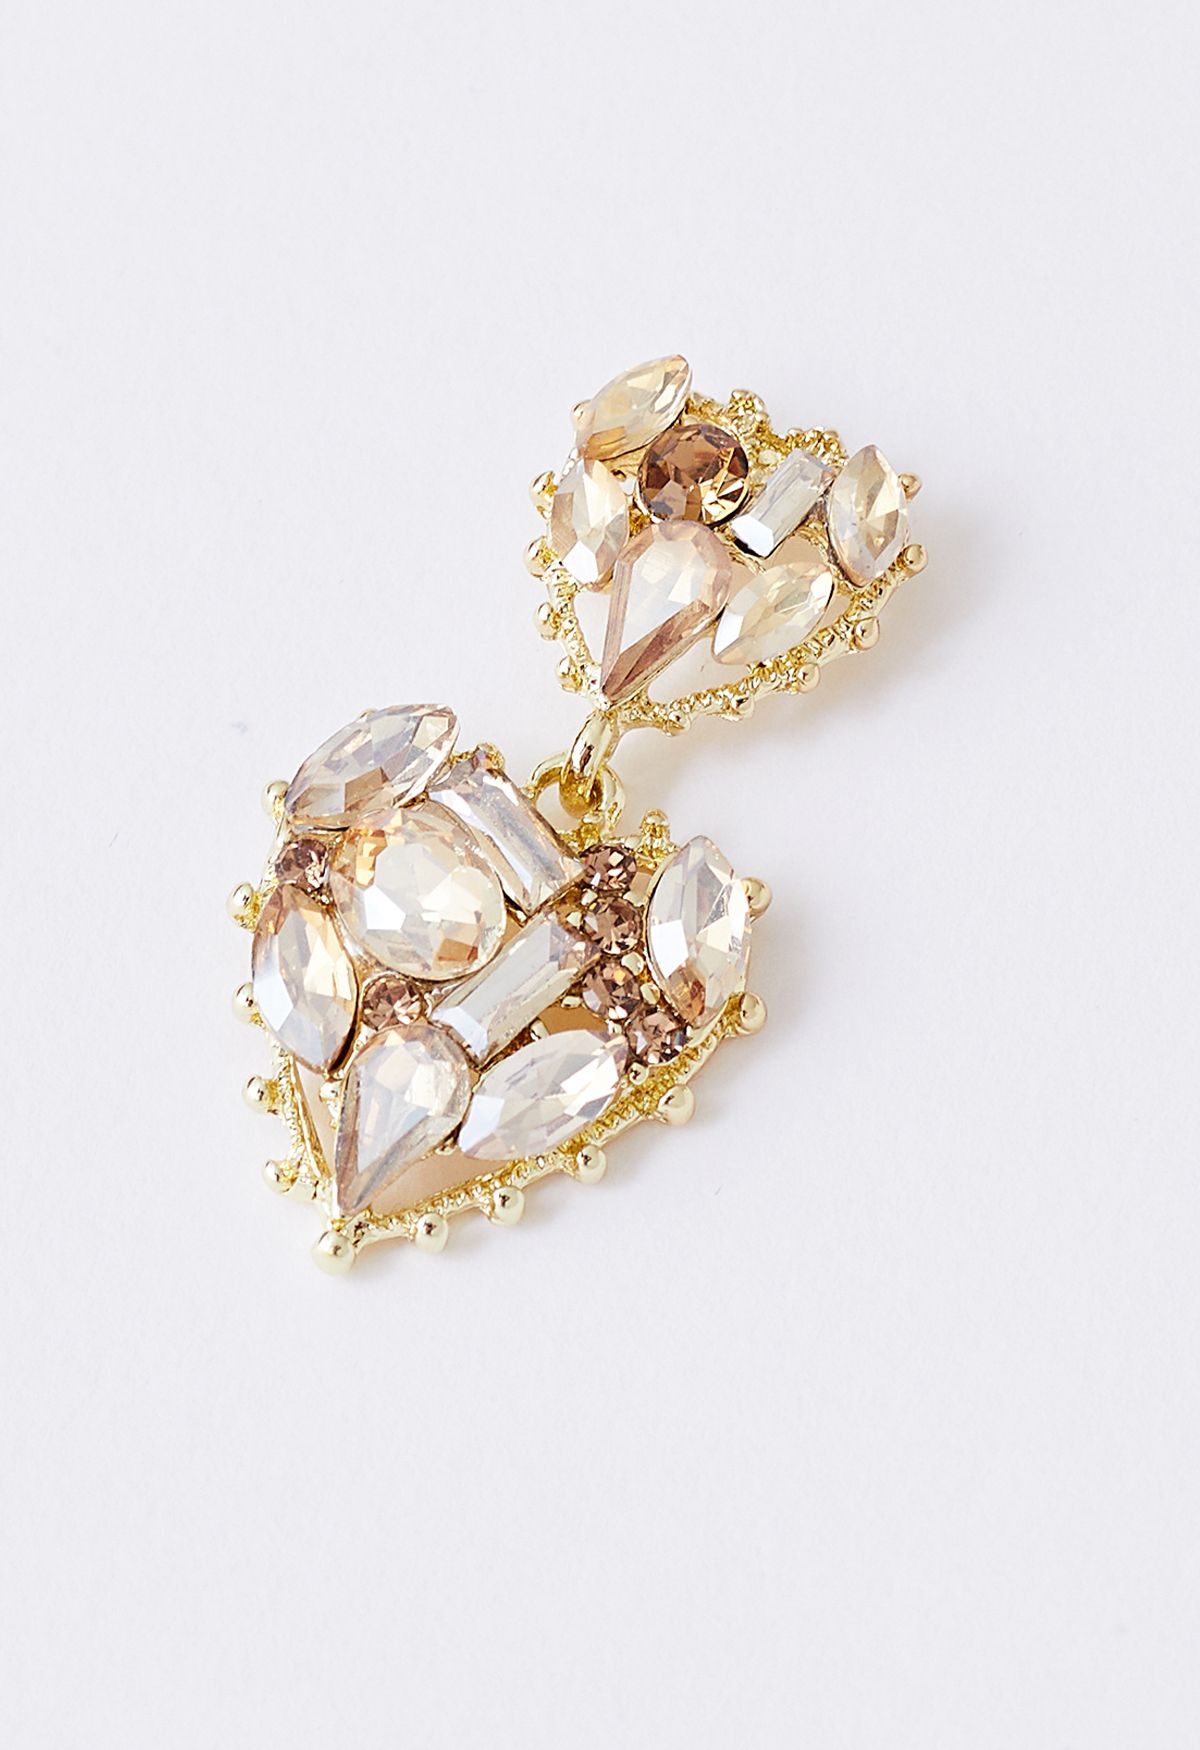 Asymmetric Golden Heart Crystal Earrings